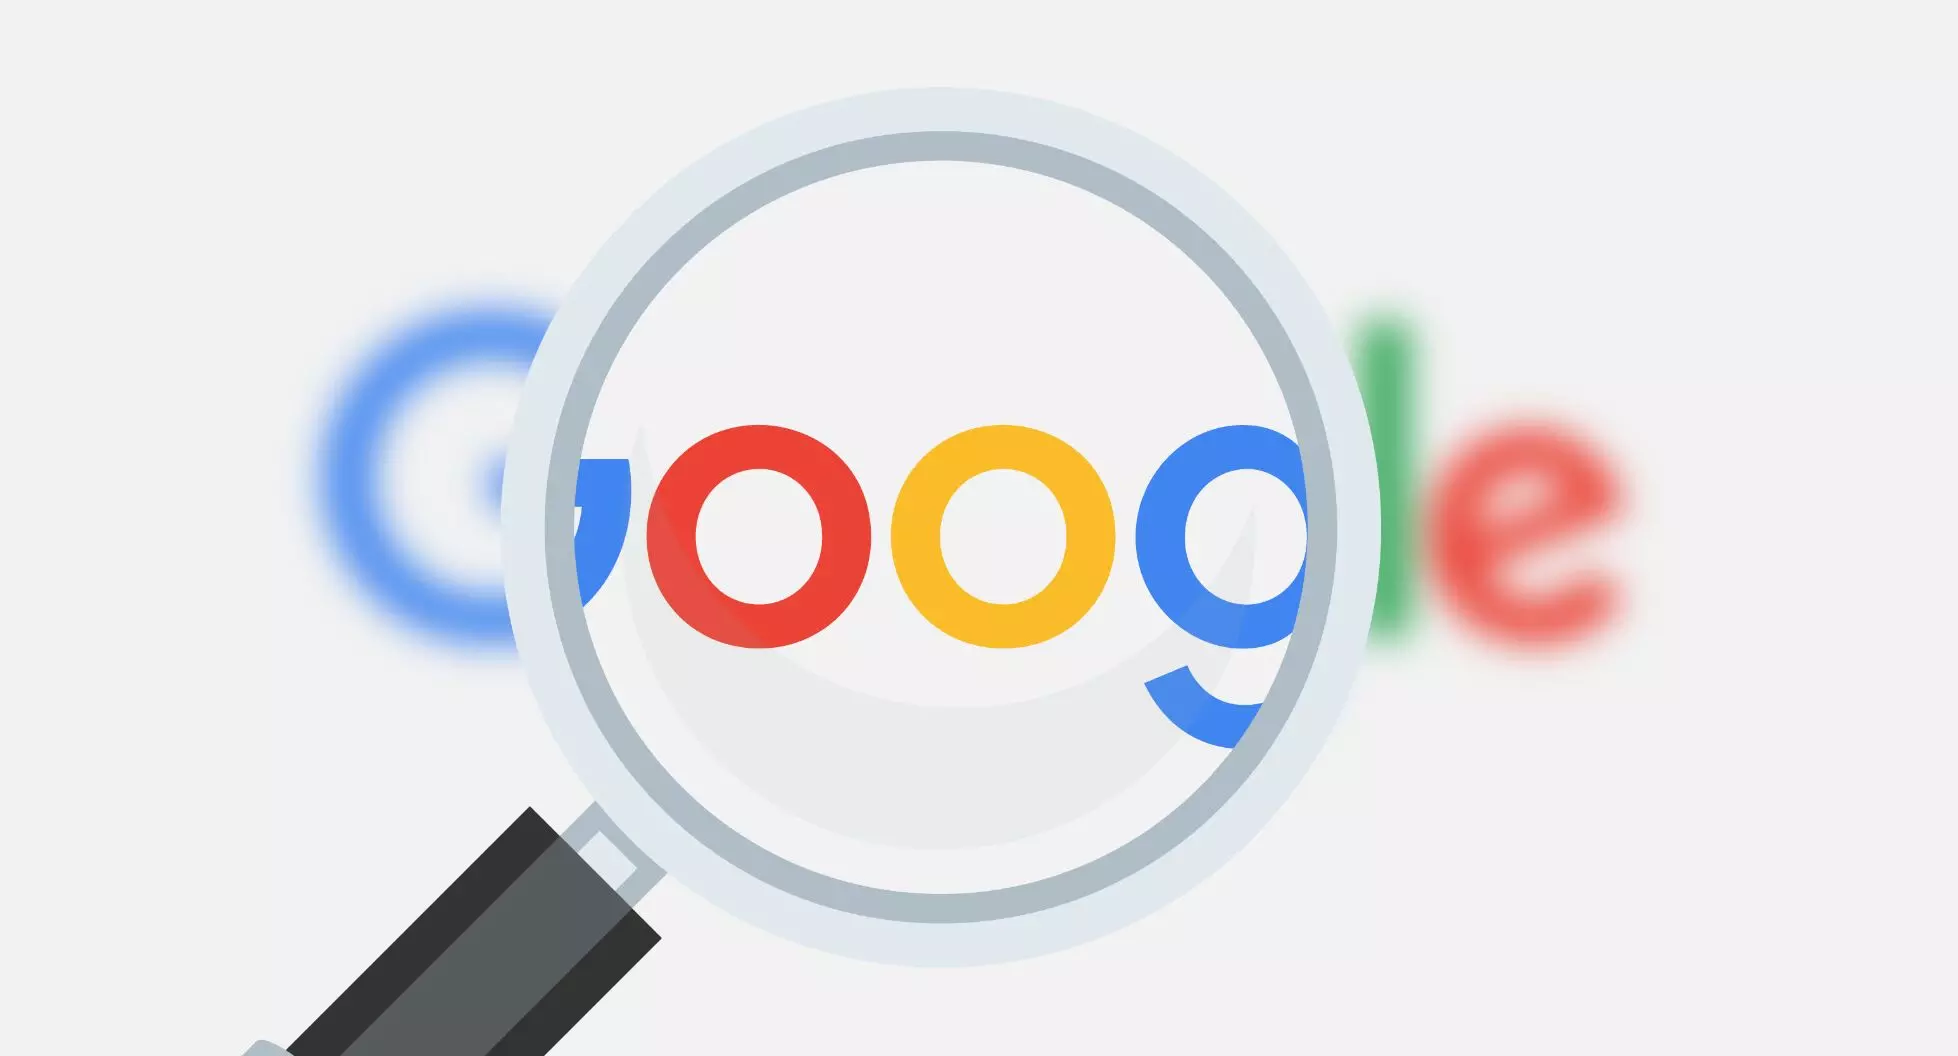 Google Search : गूगल सर्च पर टूटा 25 साल का रिकॉर्ड, पूरी दुनिया एक ही चीज खोज रही थी, जानिए- क्या?